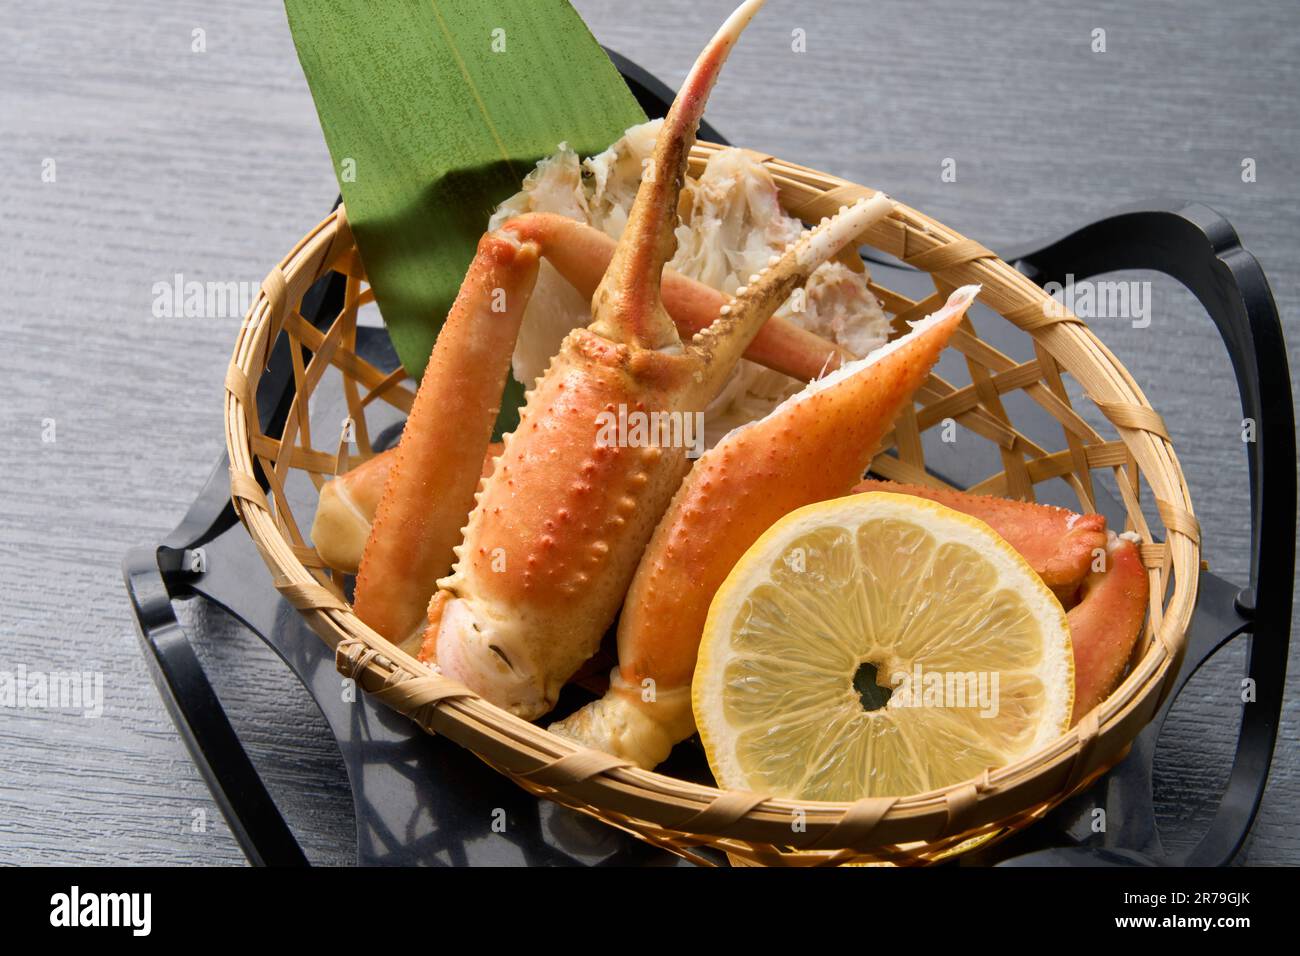 Cuisine japonaise, crabe des neiges salé Banque D'Images